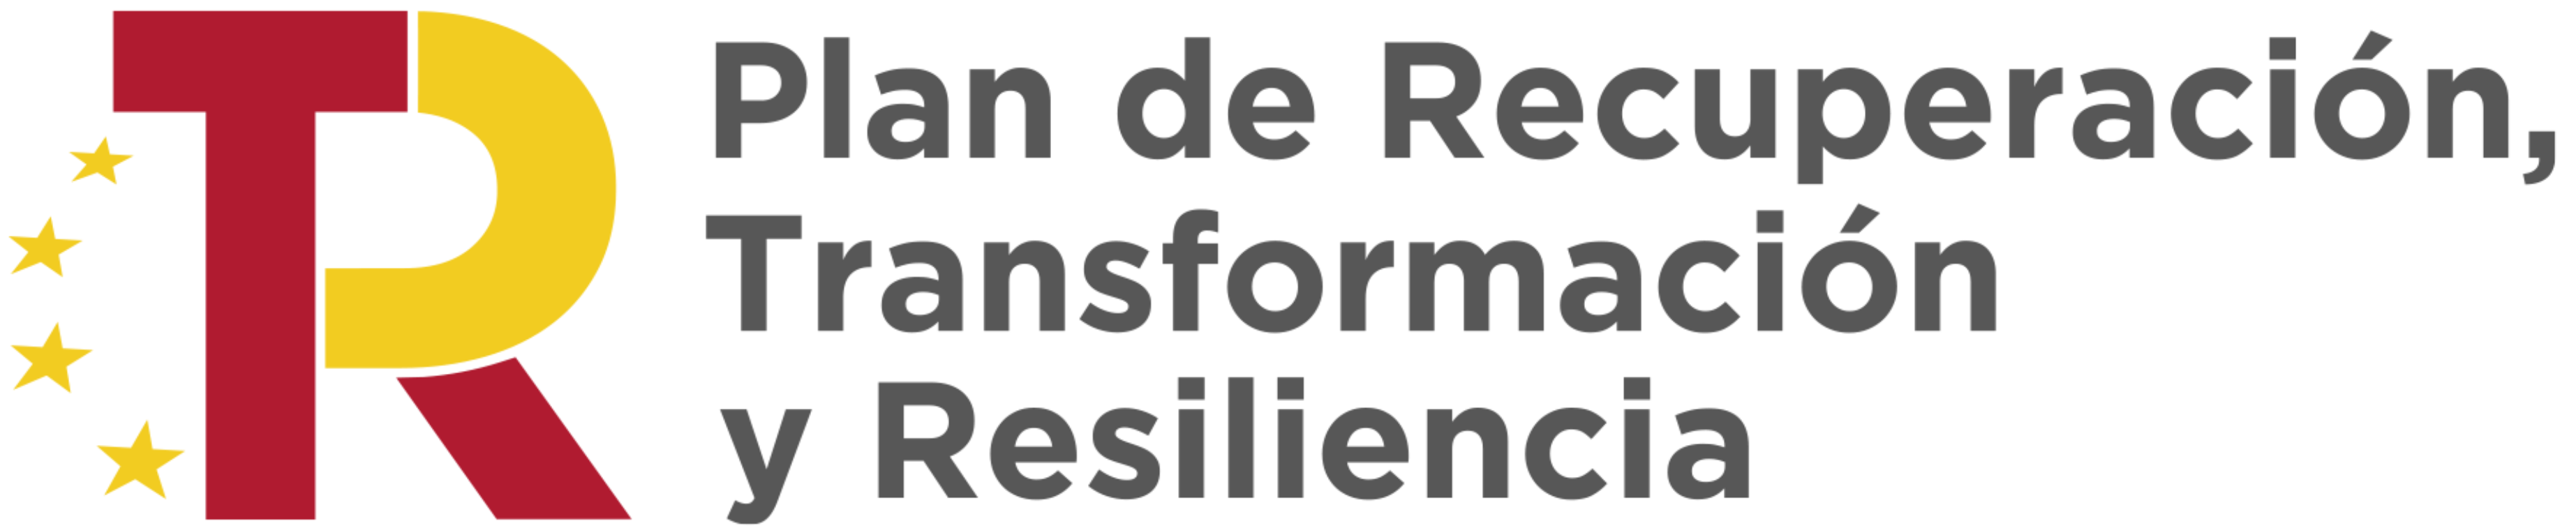 Abre en nueva ventana - Plan de Recuperación, Transformación y Resiliencia